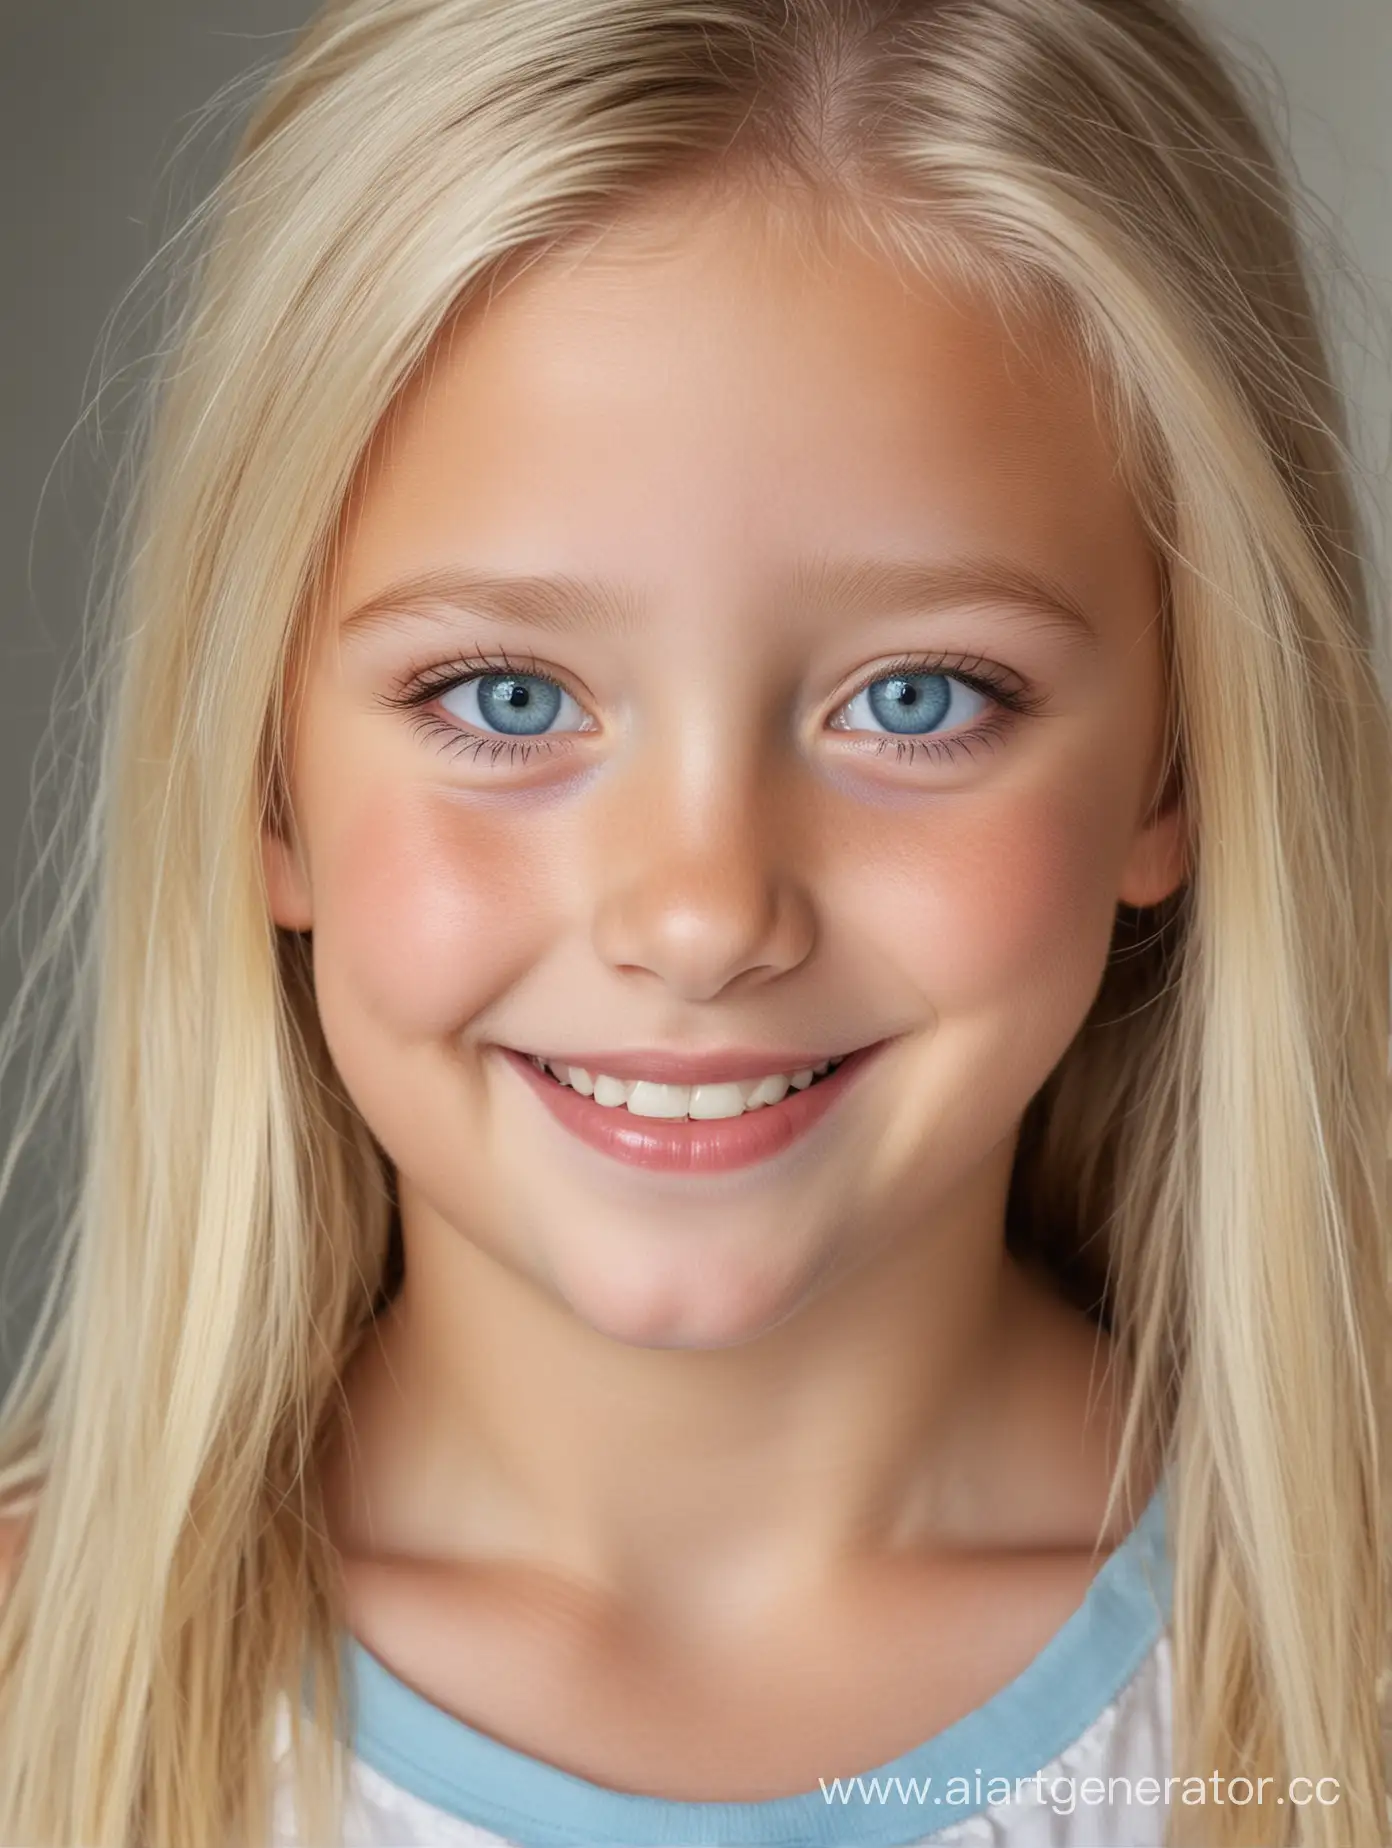 Девочка семи лет, блондинка, с голубыми глазами, улыбается